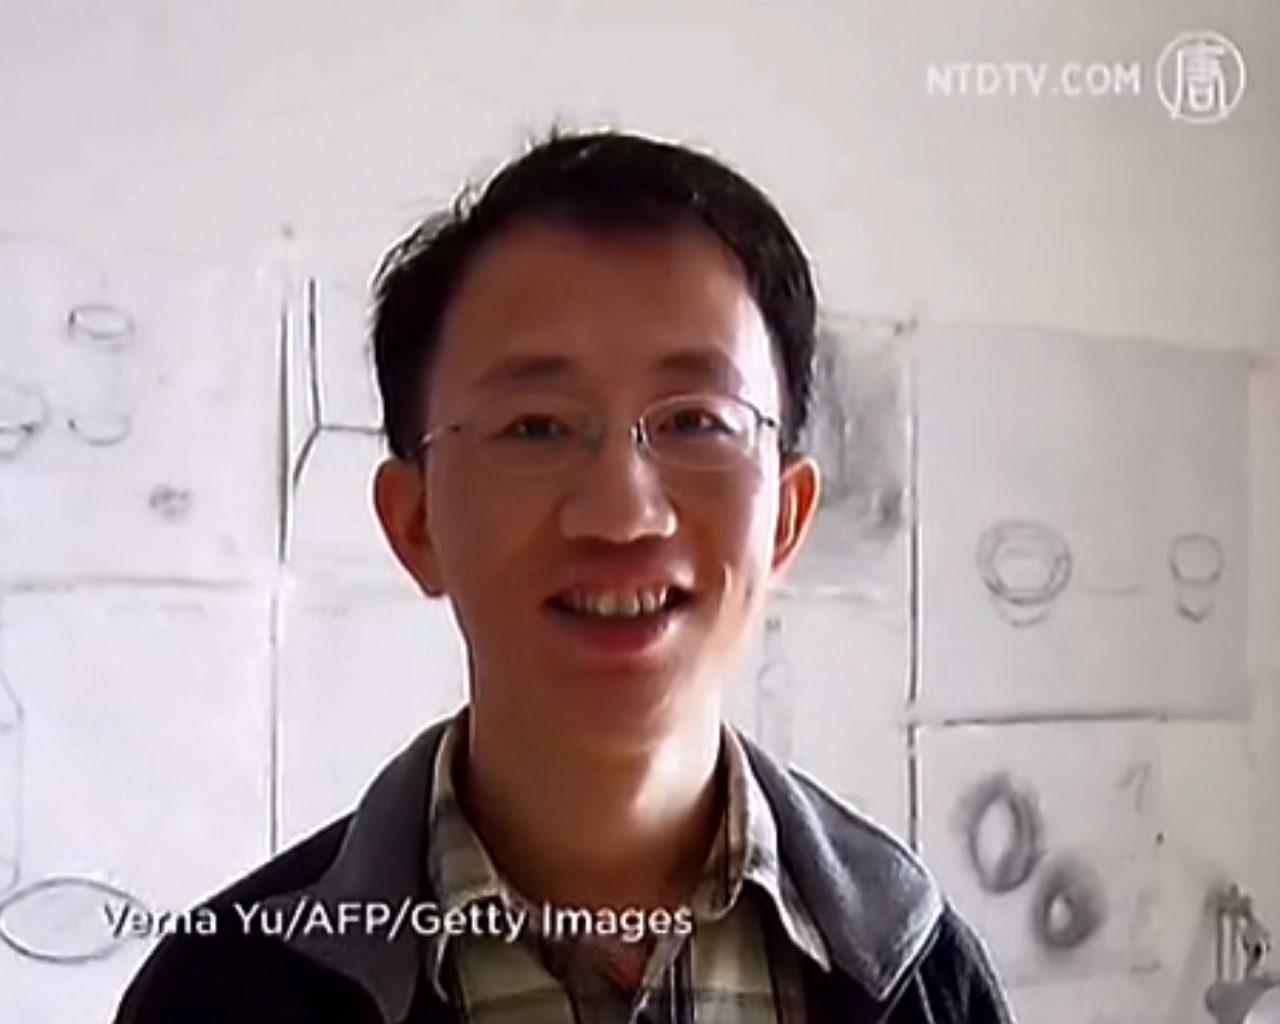 AIDS-Aktivist Hu Jia: Nach Polizeiverhör folgt nun Überwachung